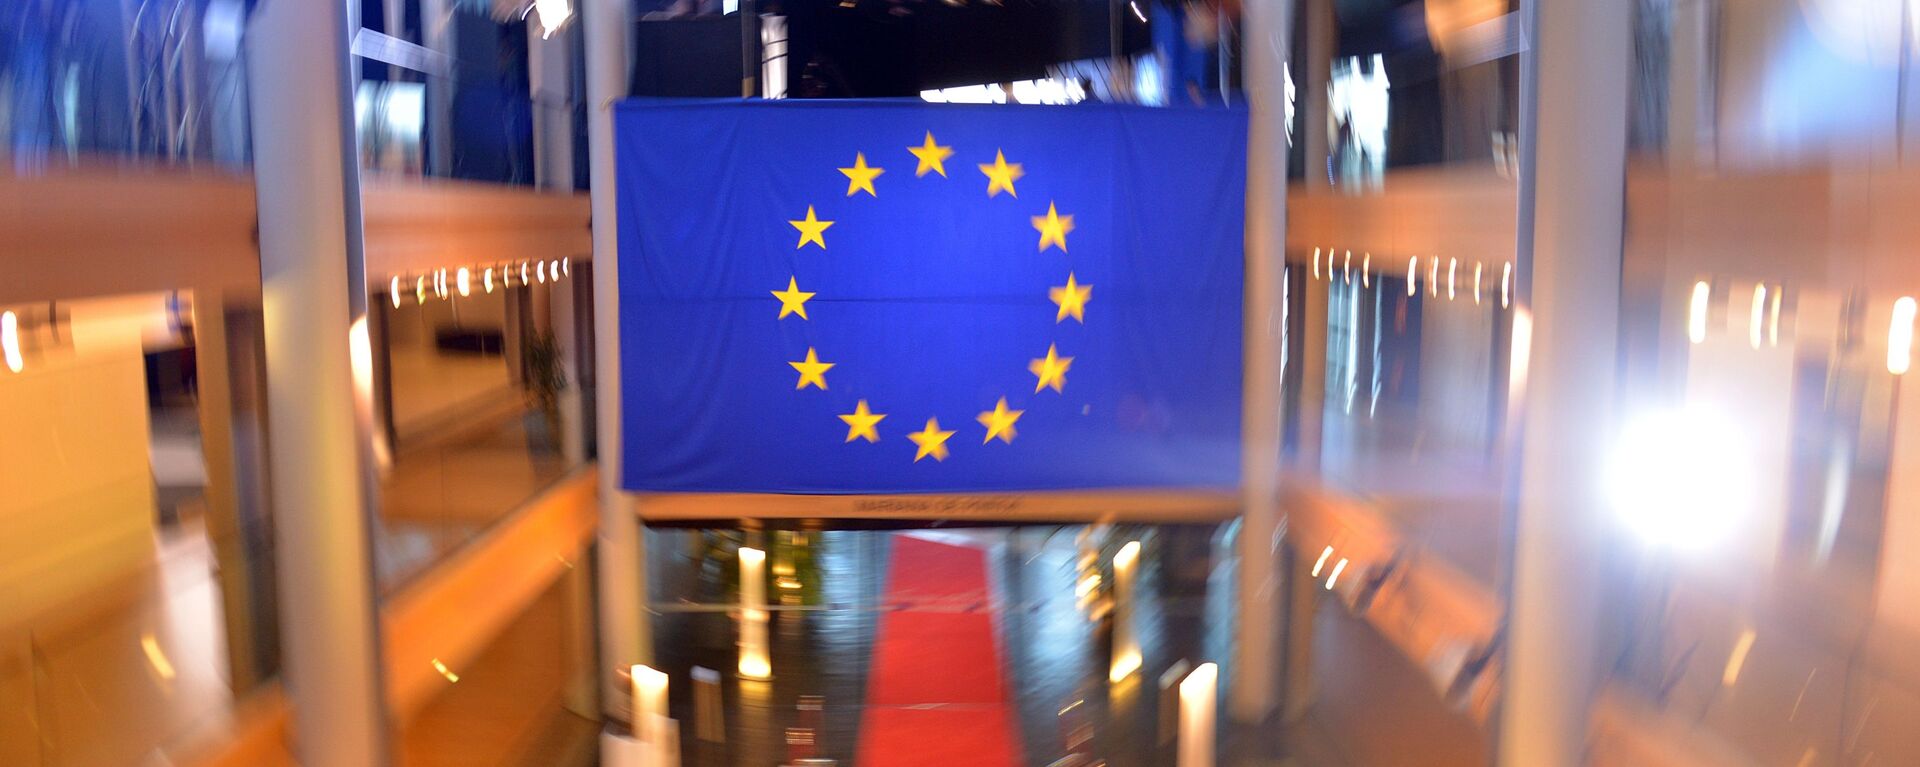 Флаг Евросоюза в главном здании Совета Европы в Страсбурге - Sputnik Latvija, 1920, 28.10.2021